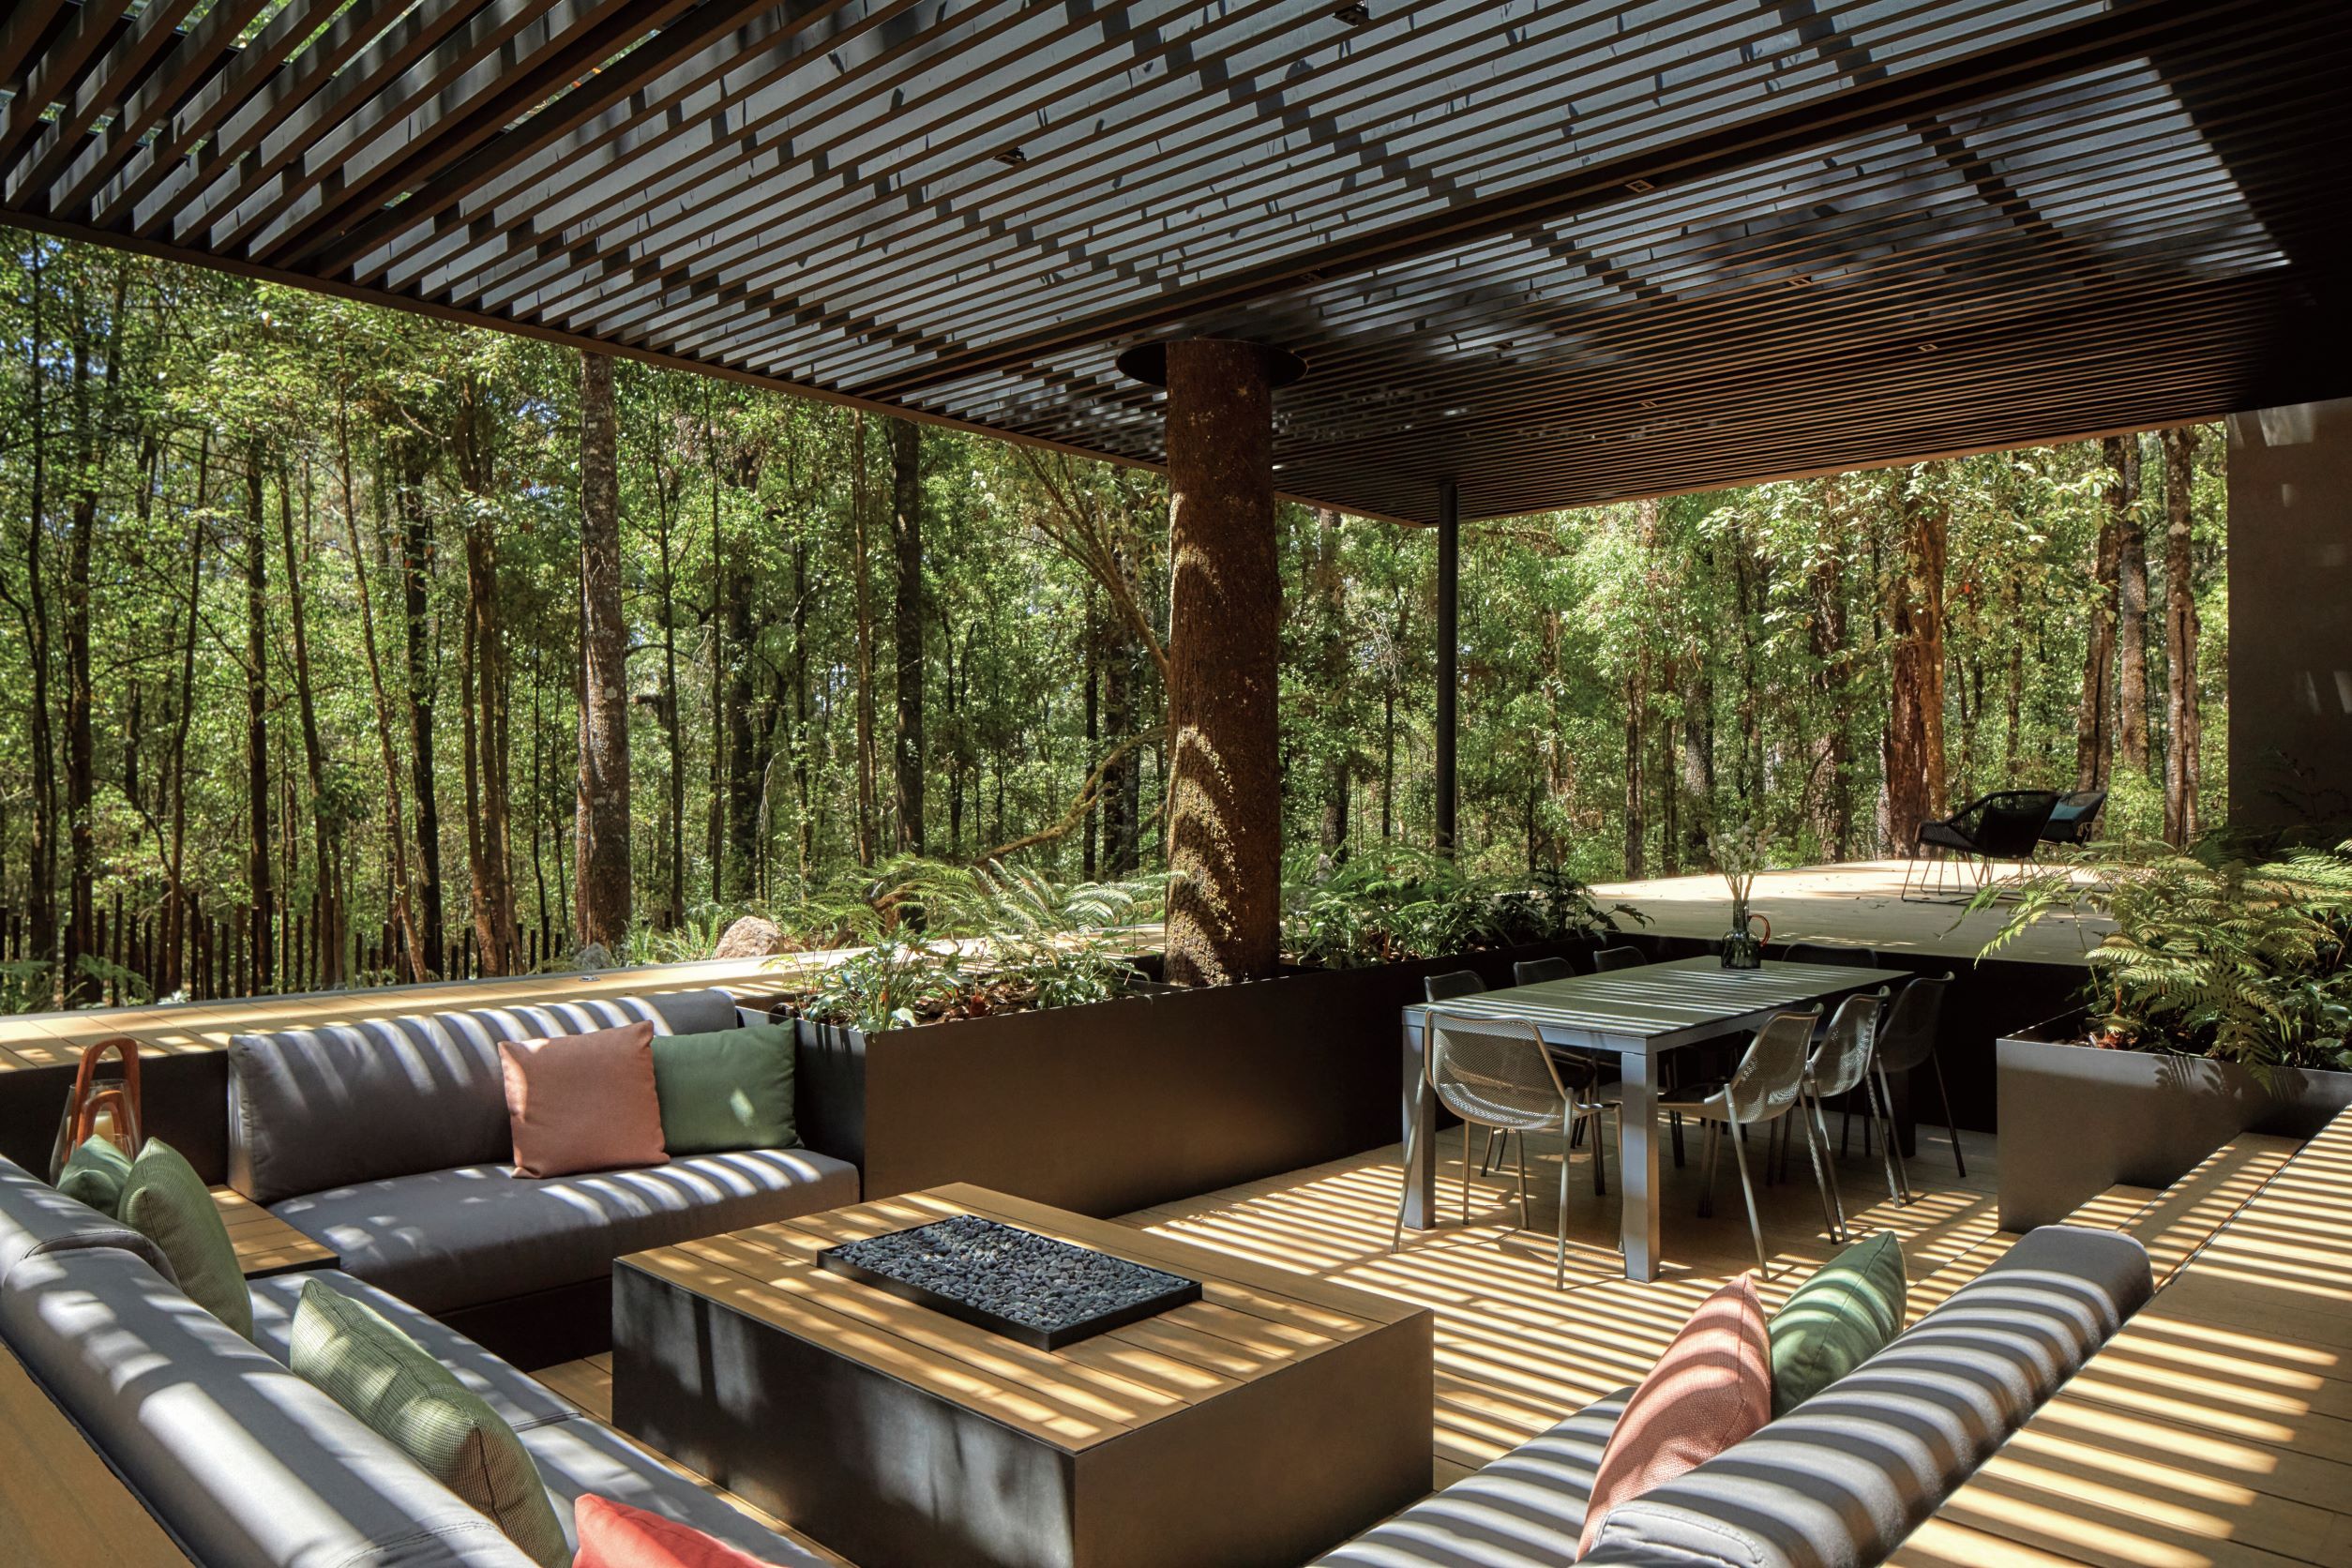 交谊小屋前被森林绿意包围的露台休闲座椅区。